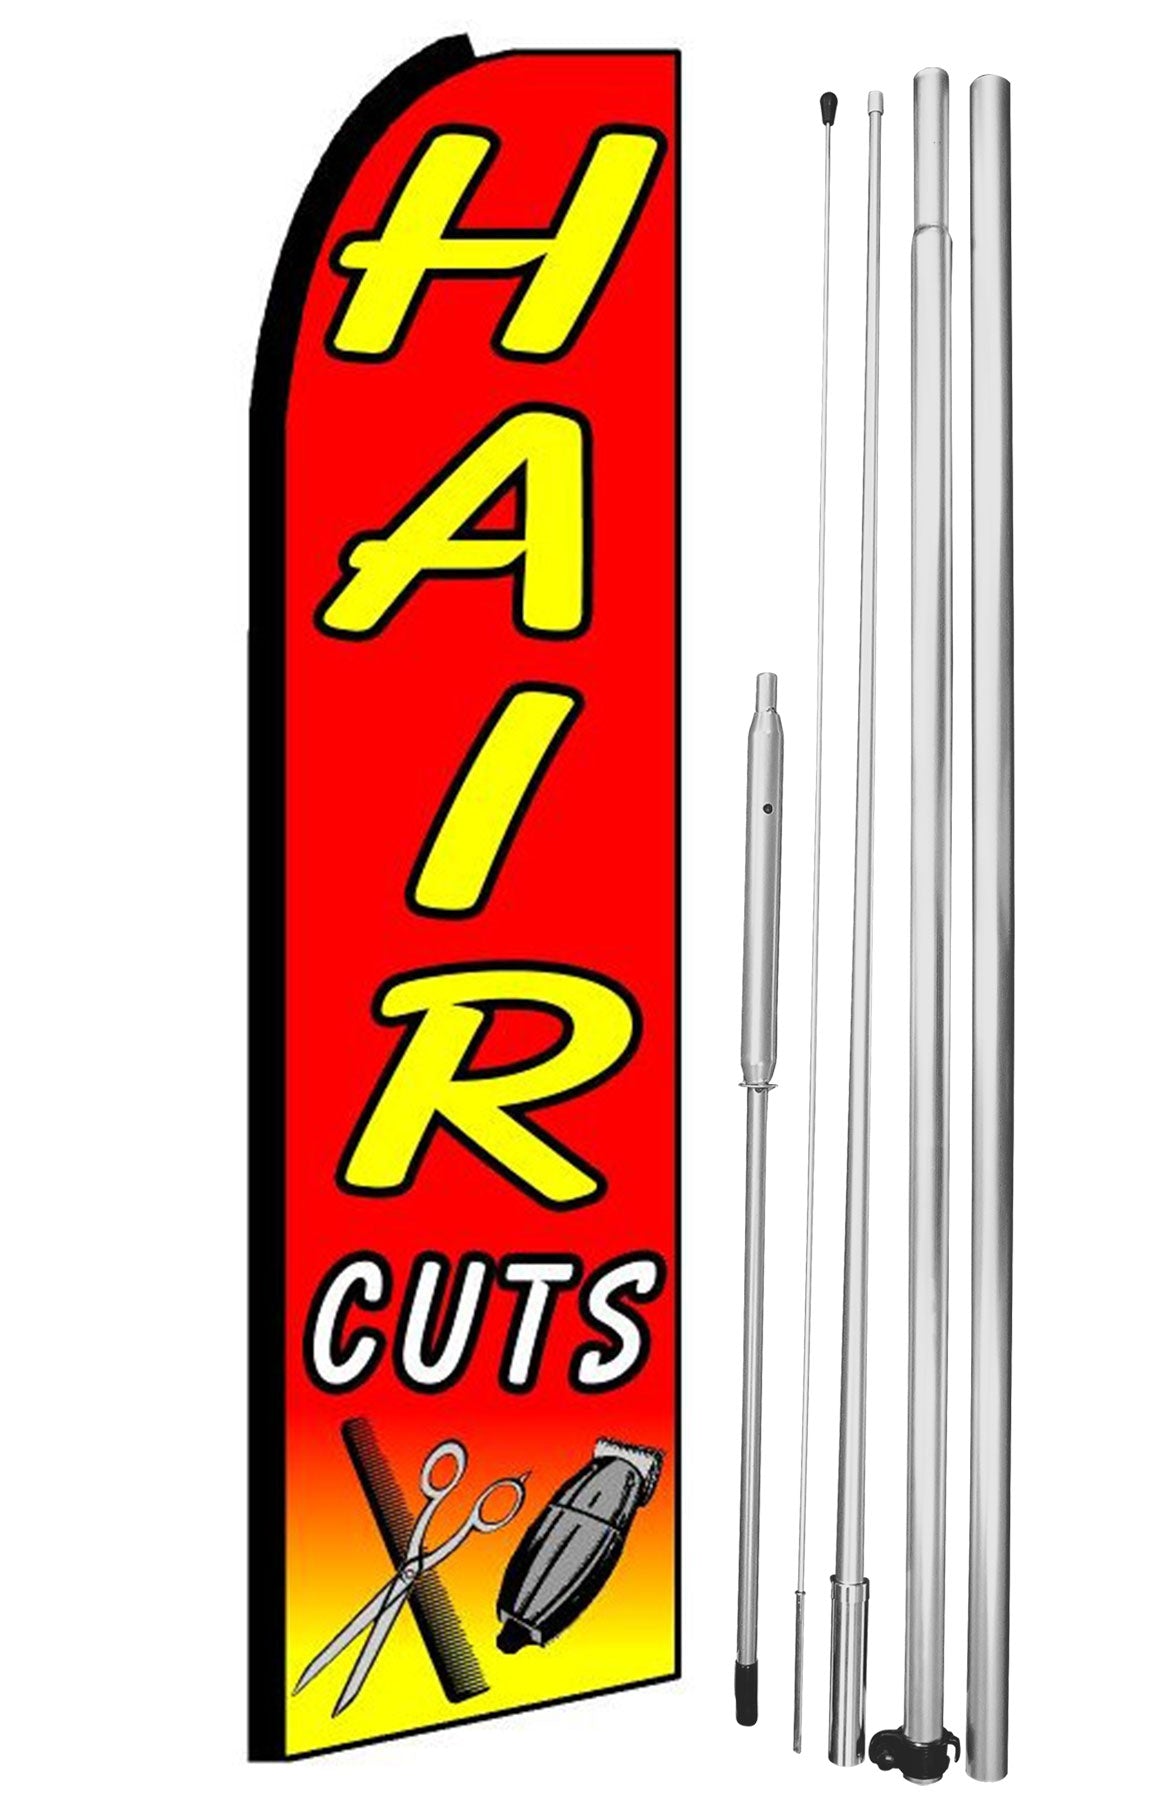 Hair Cuts